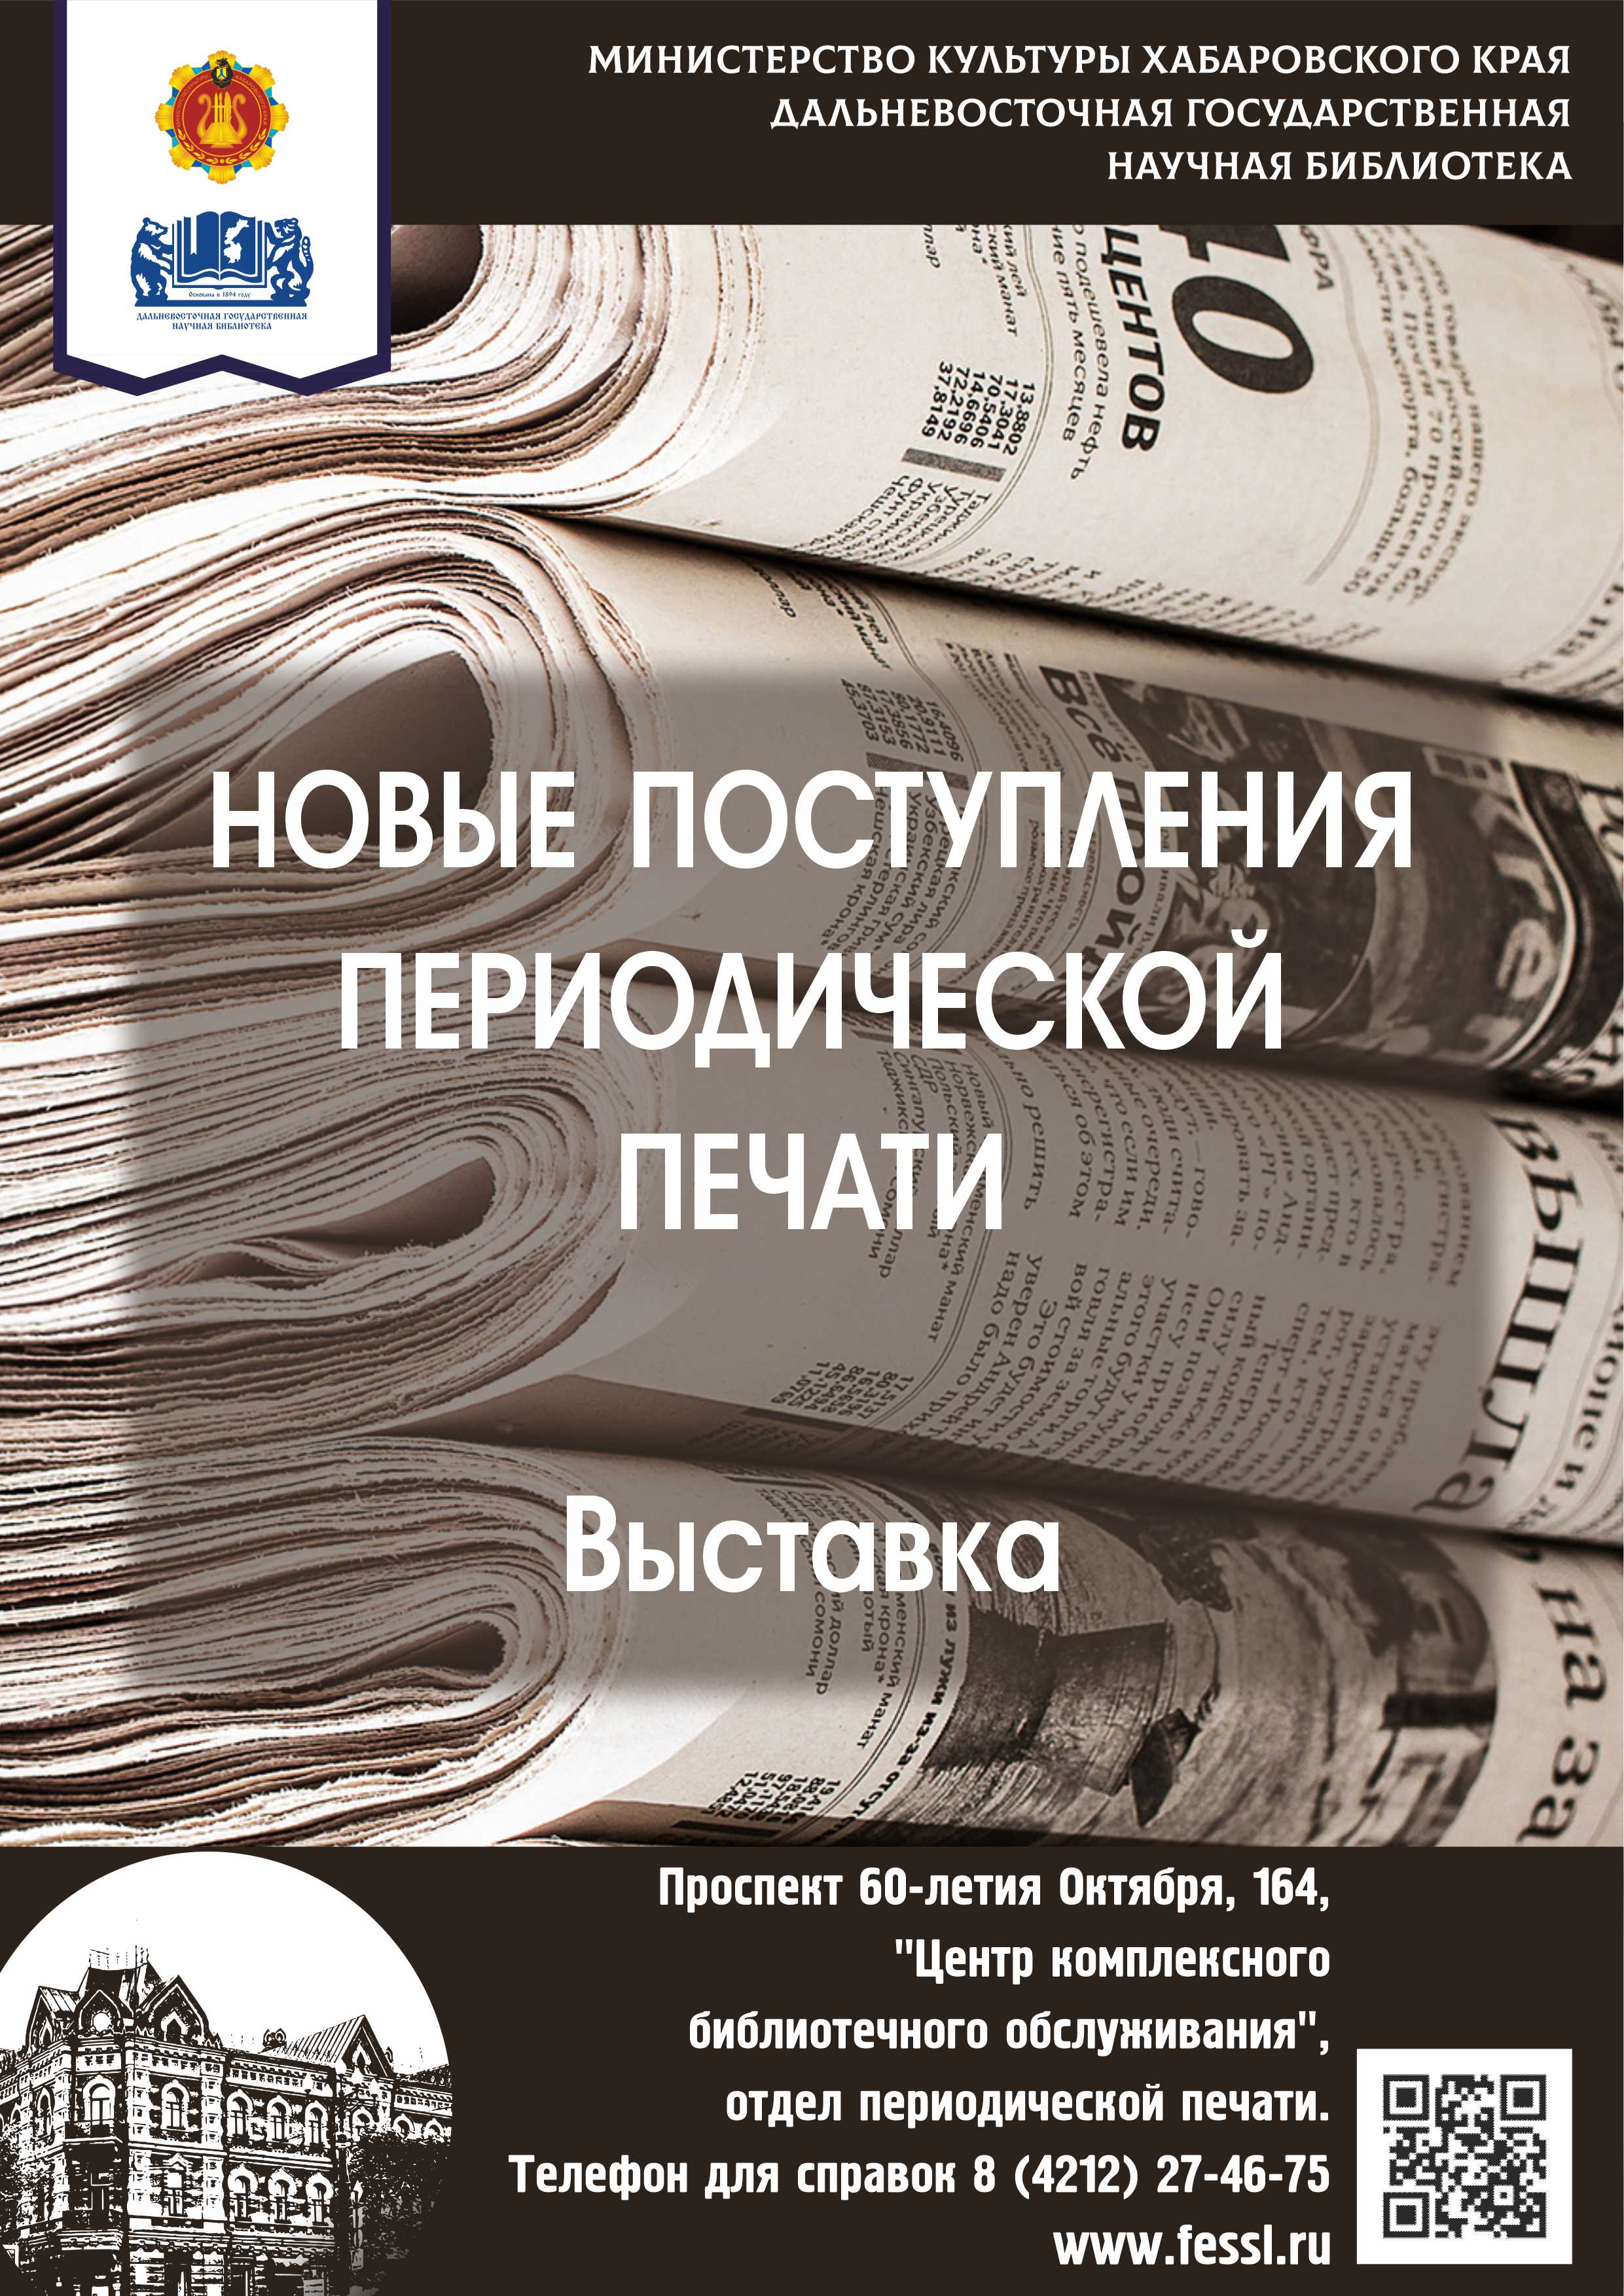 Новые поступления журналов в фонд периодической печати: июнь 2022.